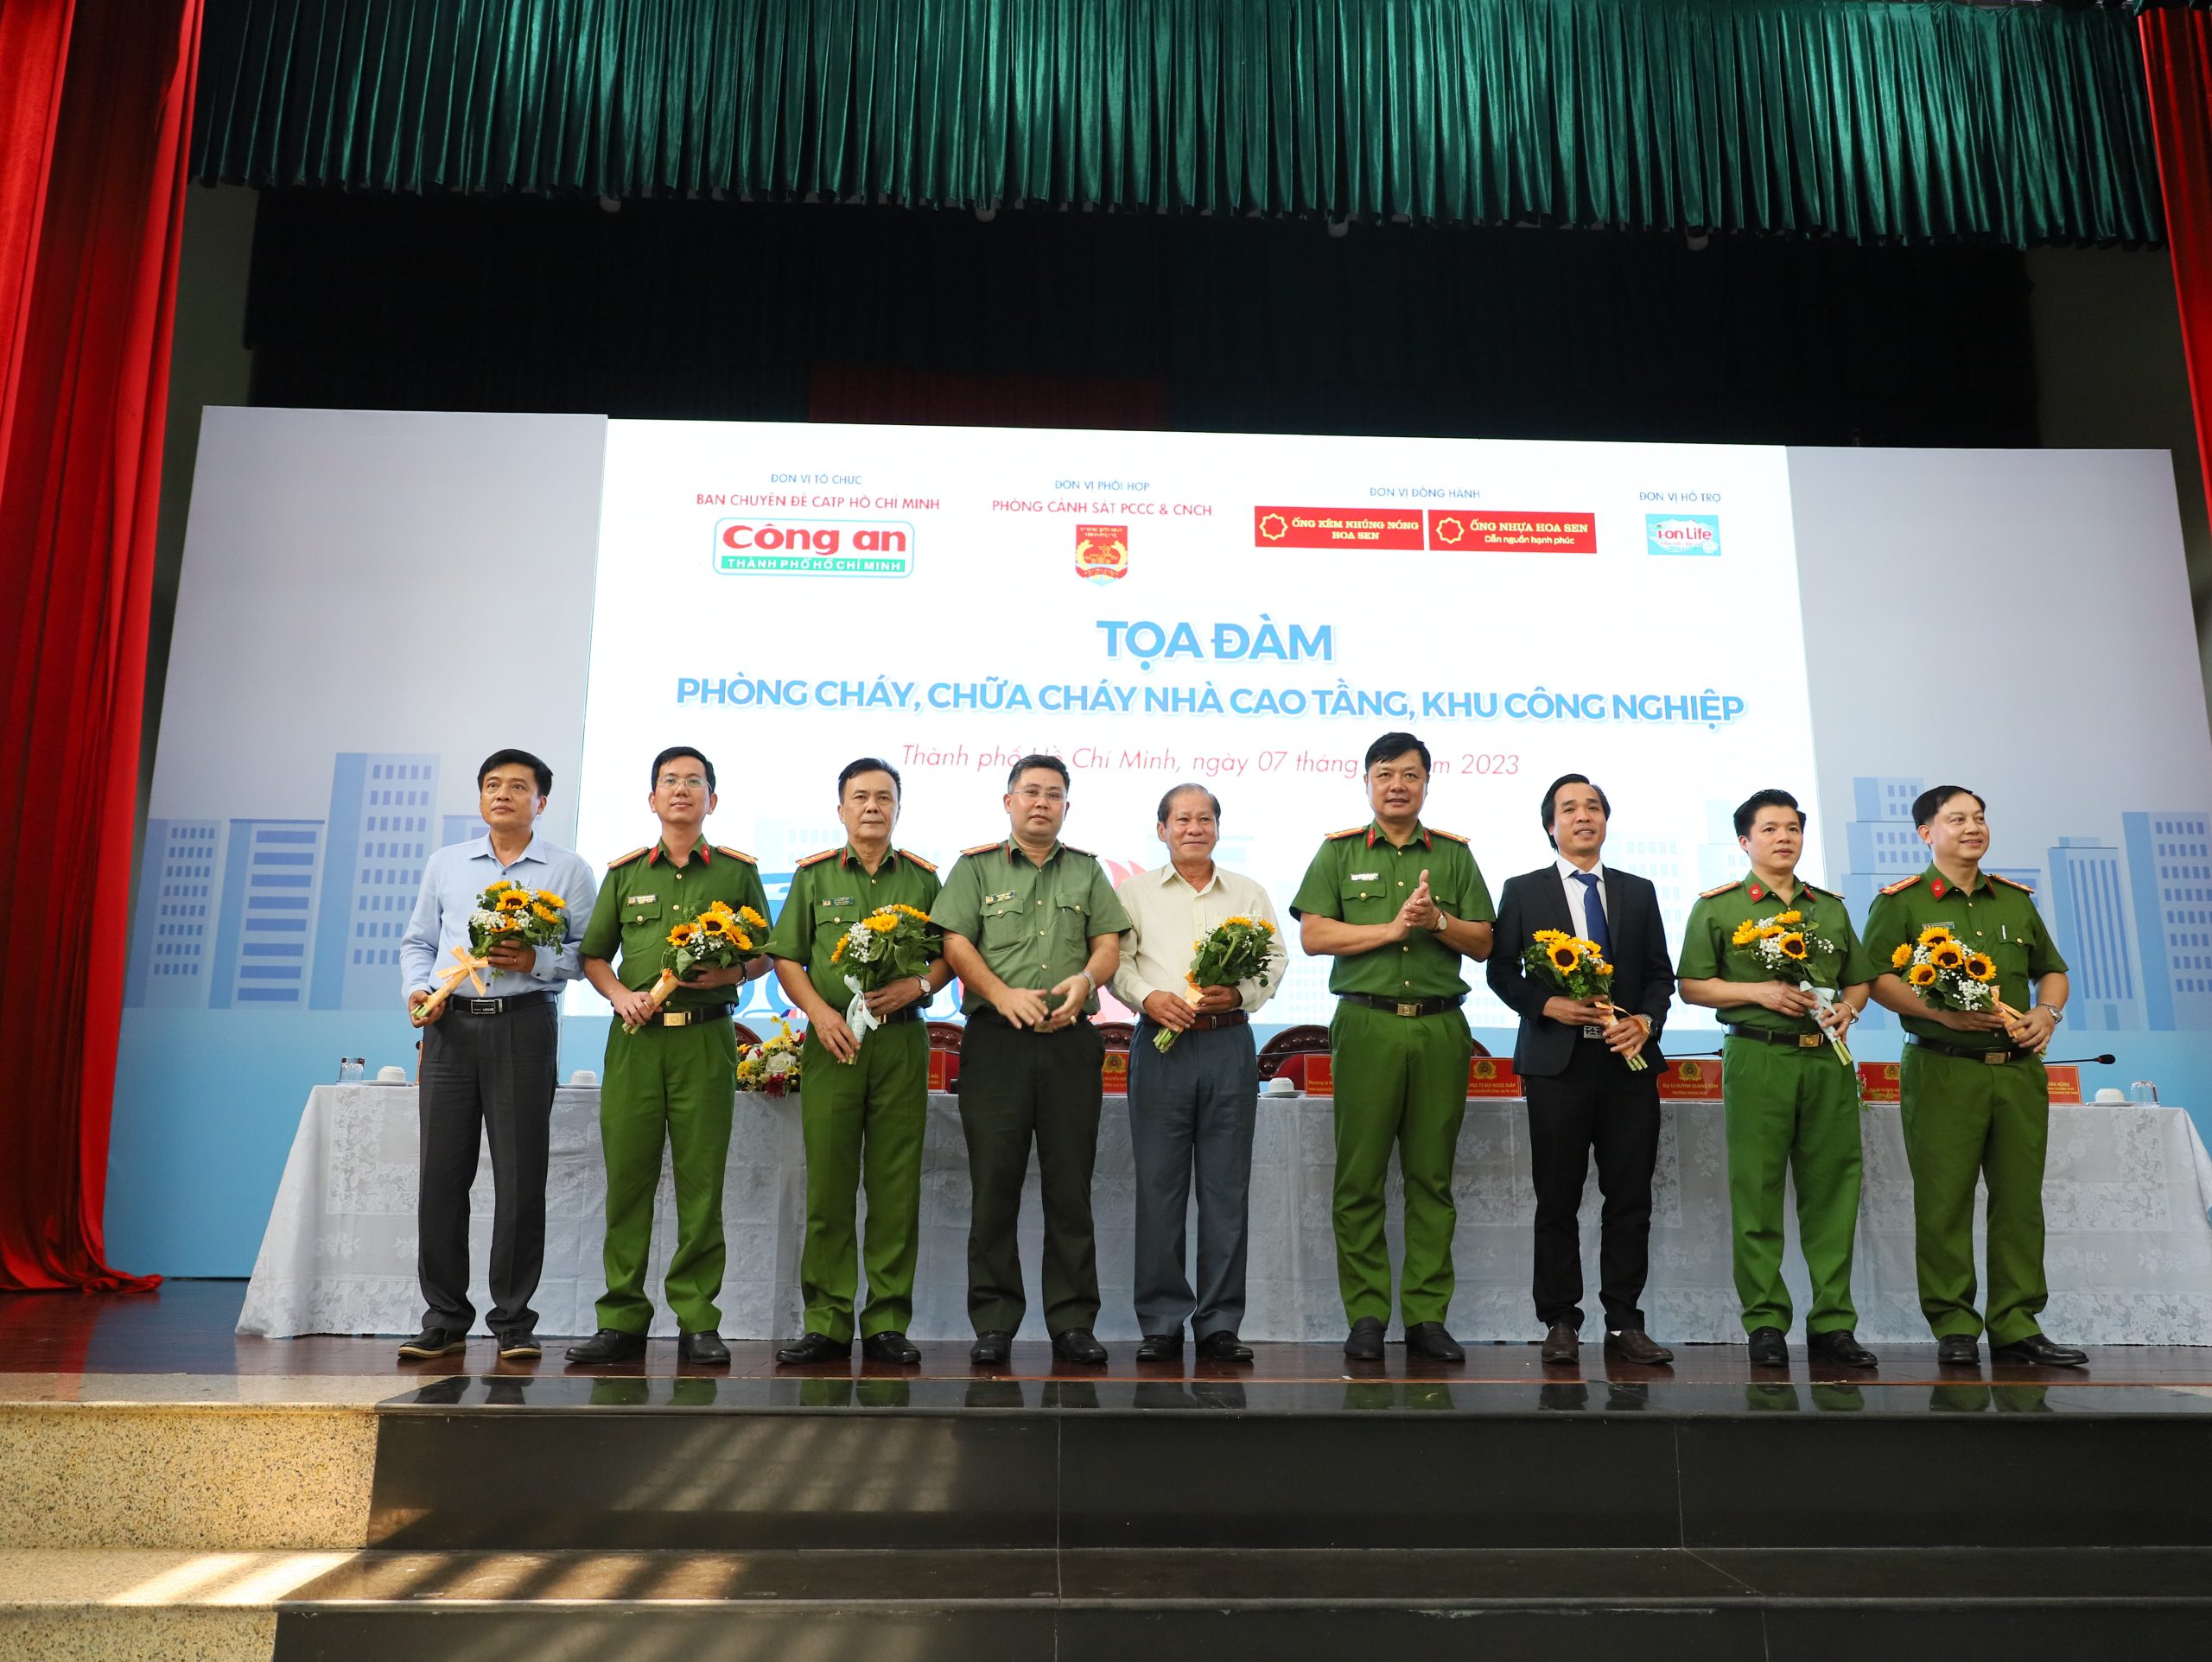 Thượng tá Nguyễn Đình Dương, Phó Giám đốc Công an TPHCM cùng Đại tá Bùi Ngọc Giáp, Trưởng Ban Chuyên đề Công an TPHCM tặng hoa cảm ơn các khách mời